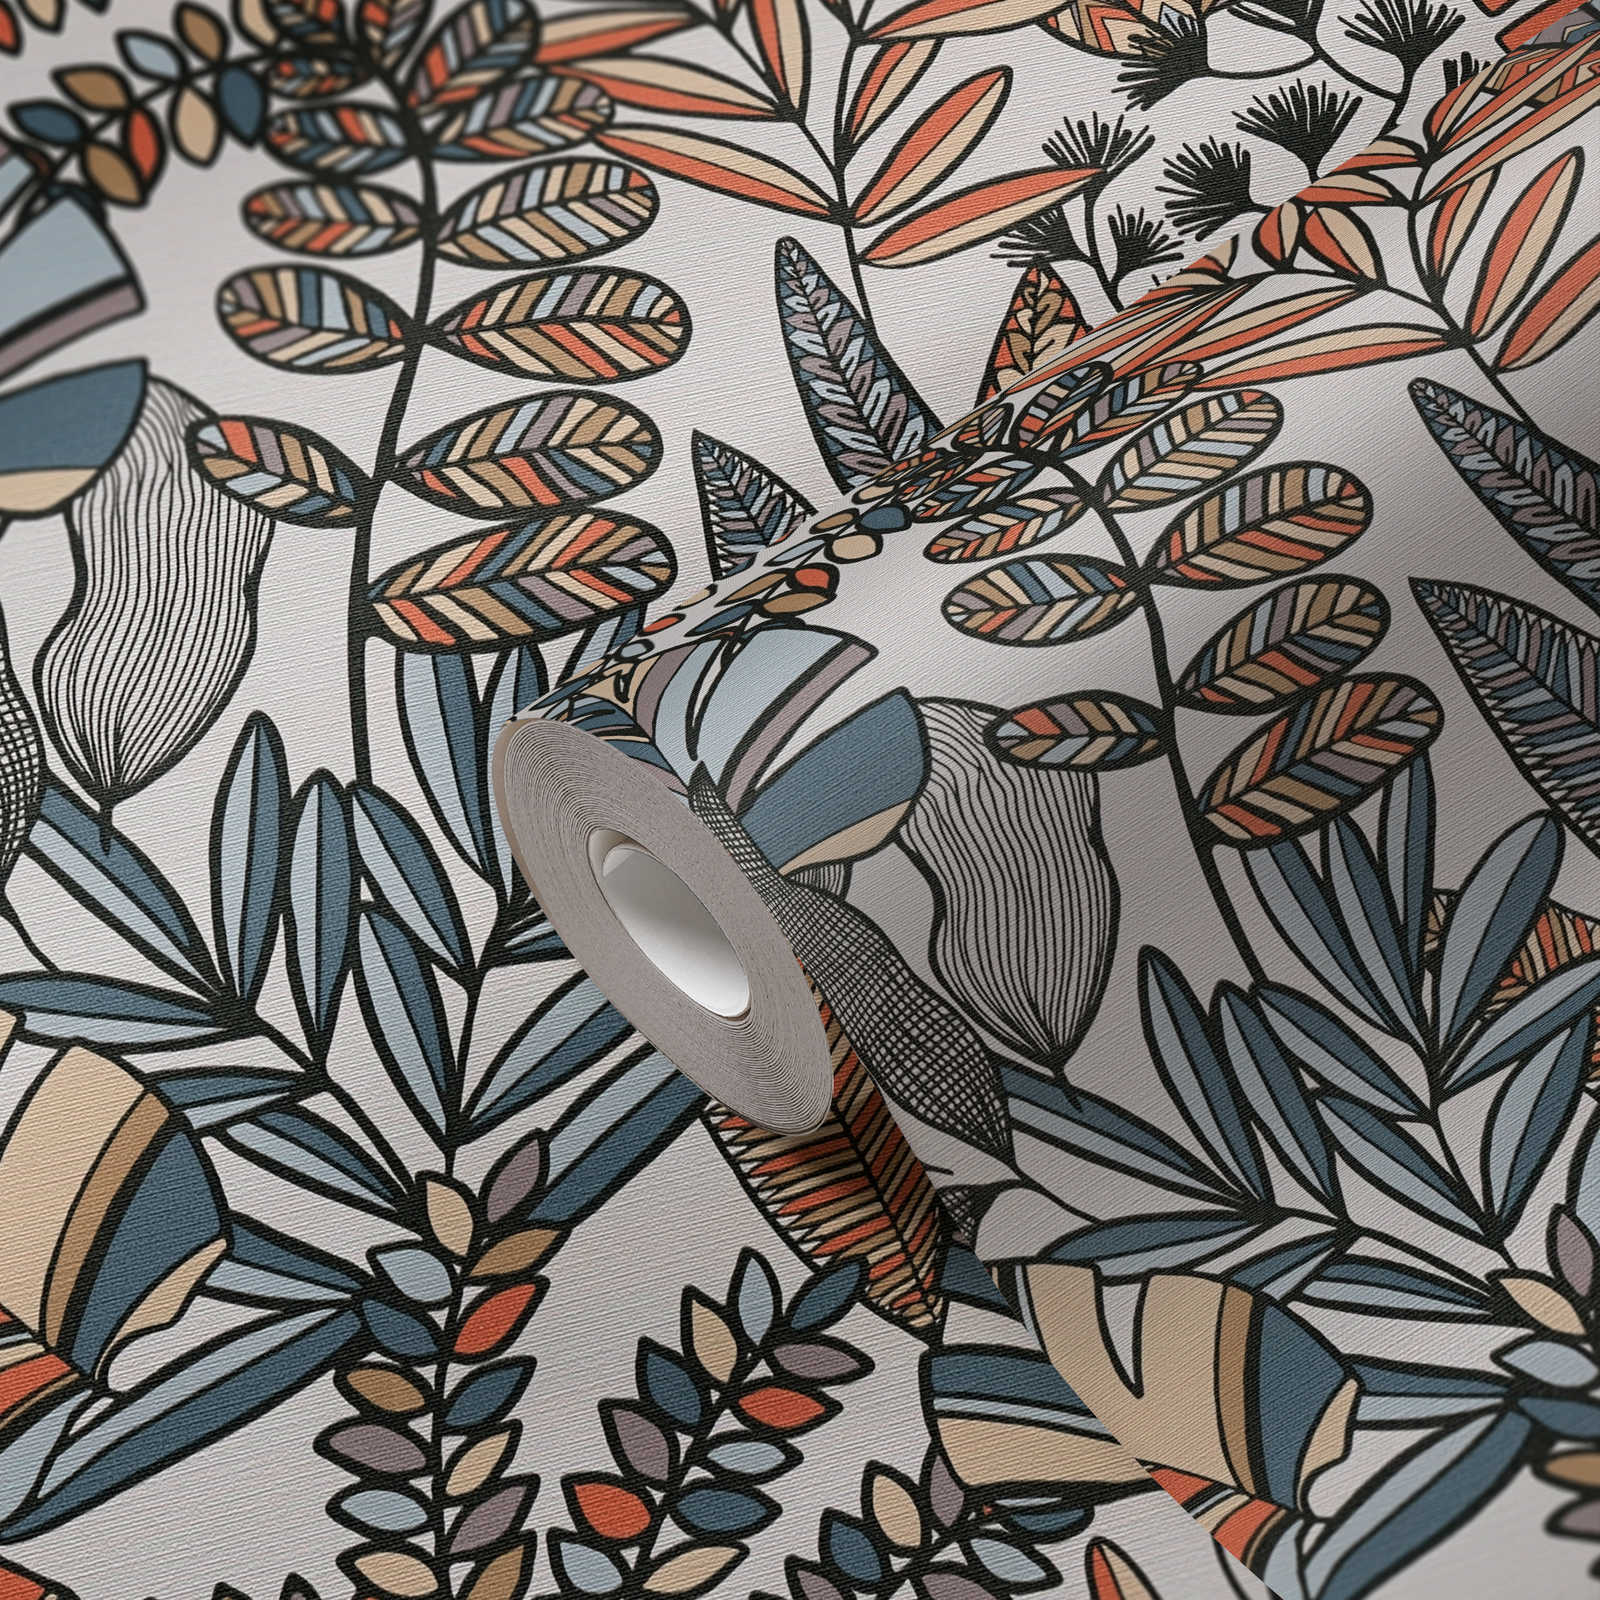             Vliestapete mit kräftigen Farben in Dschungeloptik – Weiß, Schwarz, Orange
        